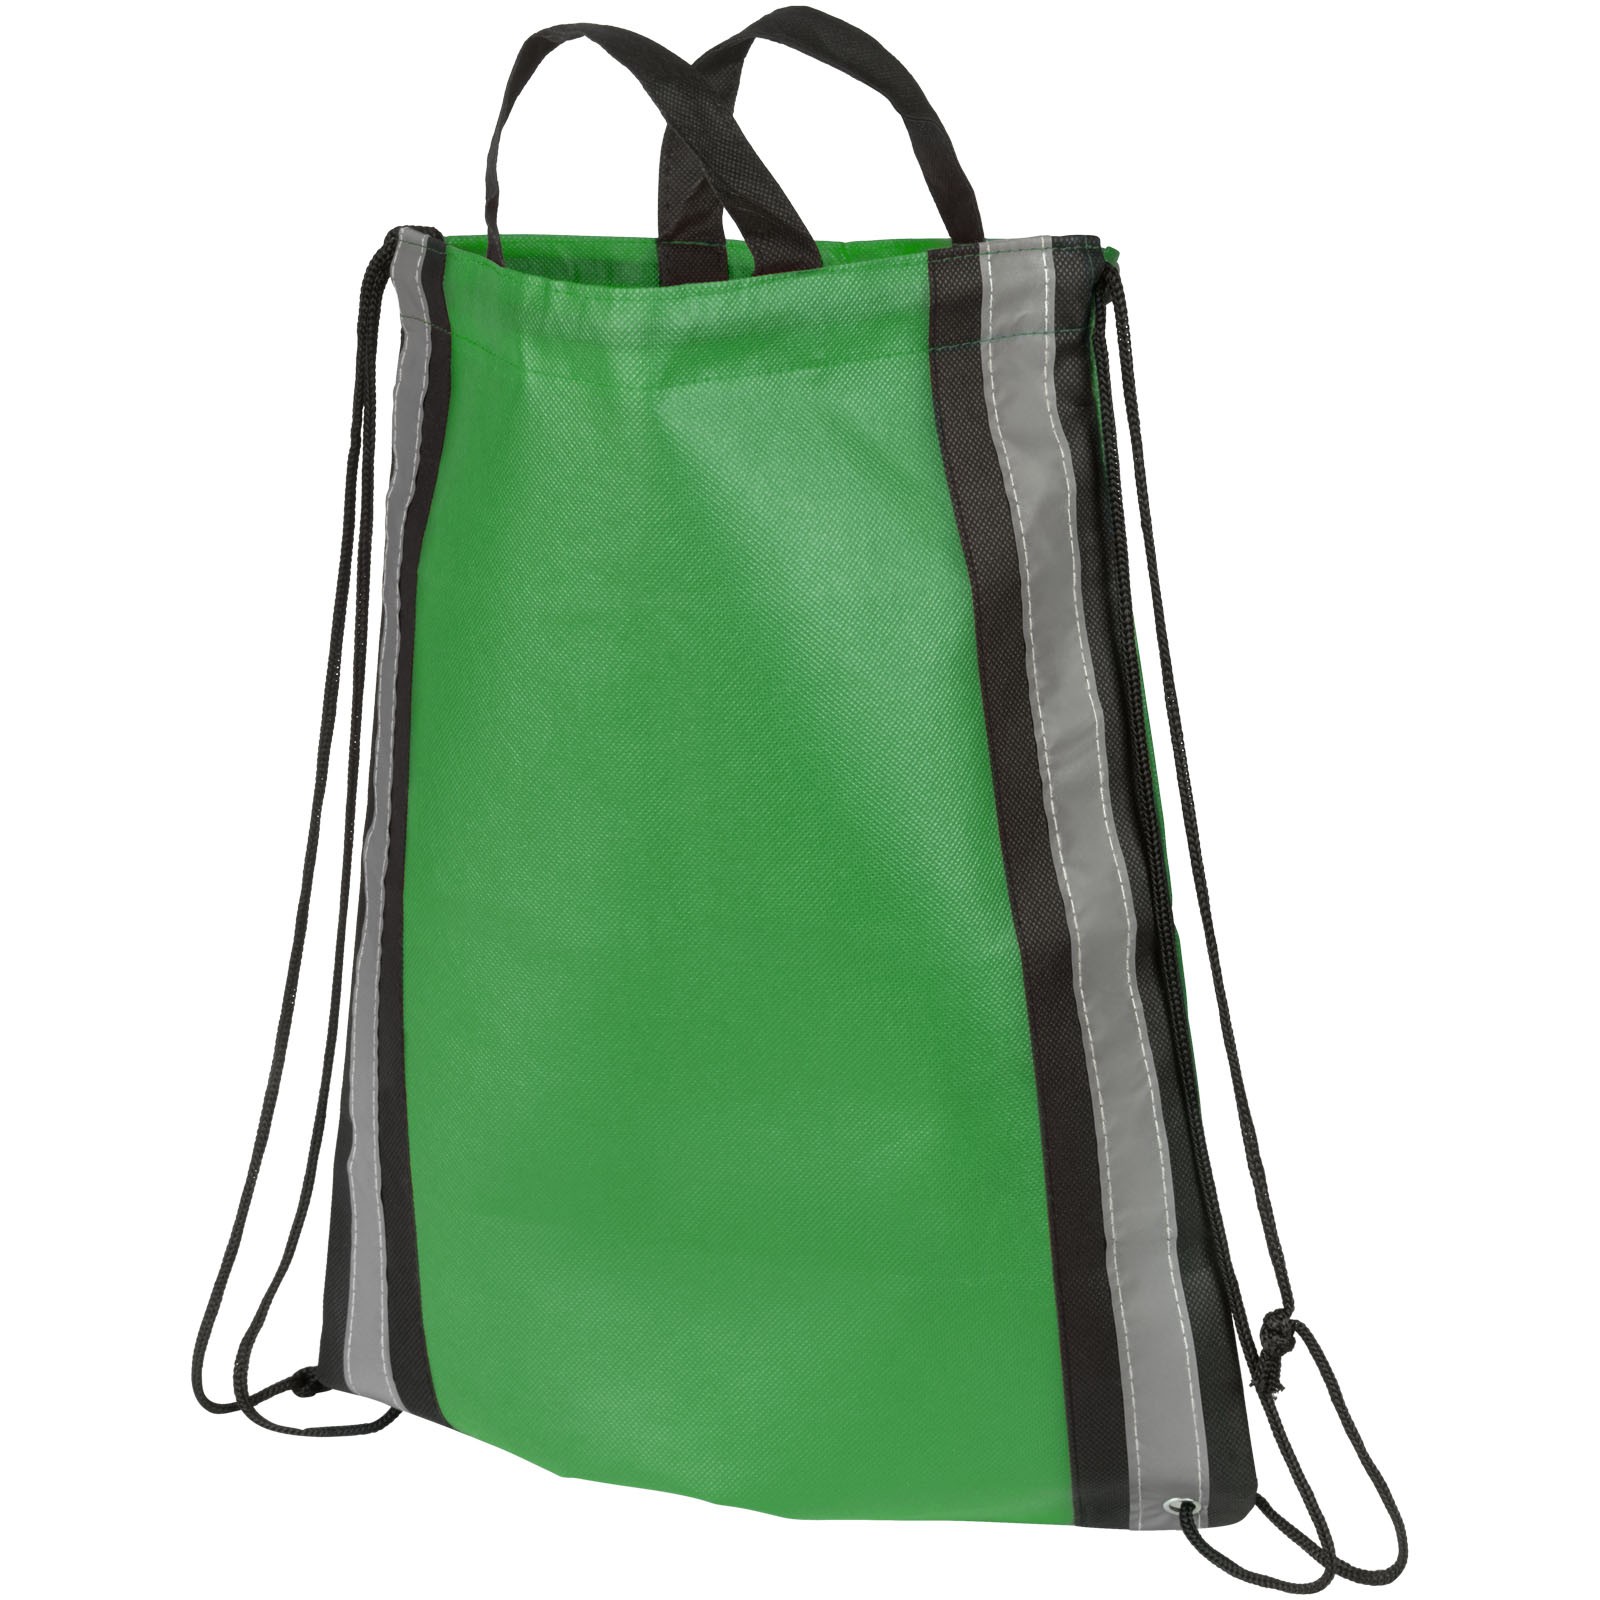 Odblaskowy plecak non-woven ściągany sznurkiem - Zielony